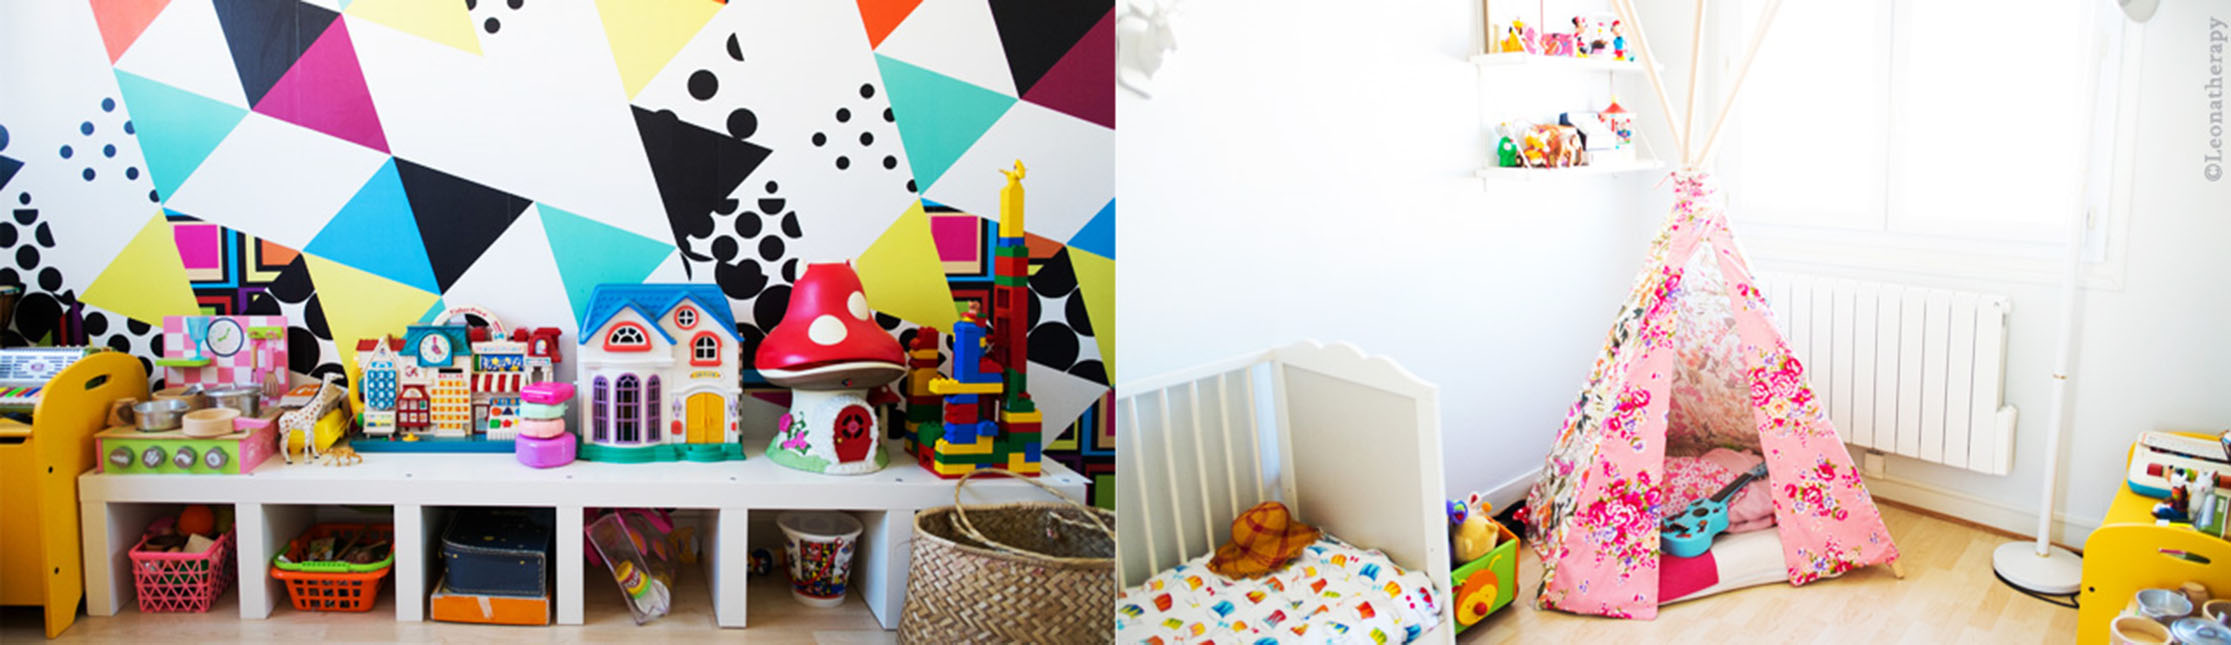 Créez une chambre d’enfant ludique et fonctionnelle avec le blog Leonatherapy